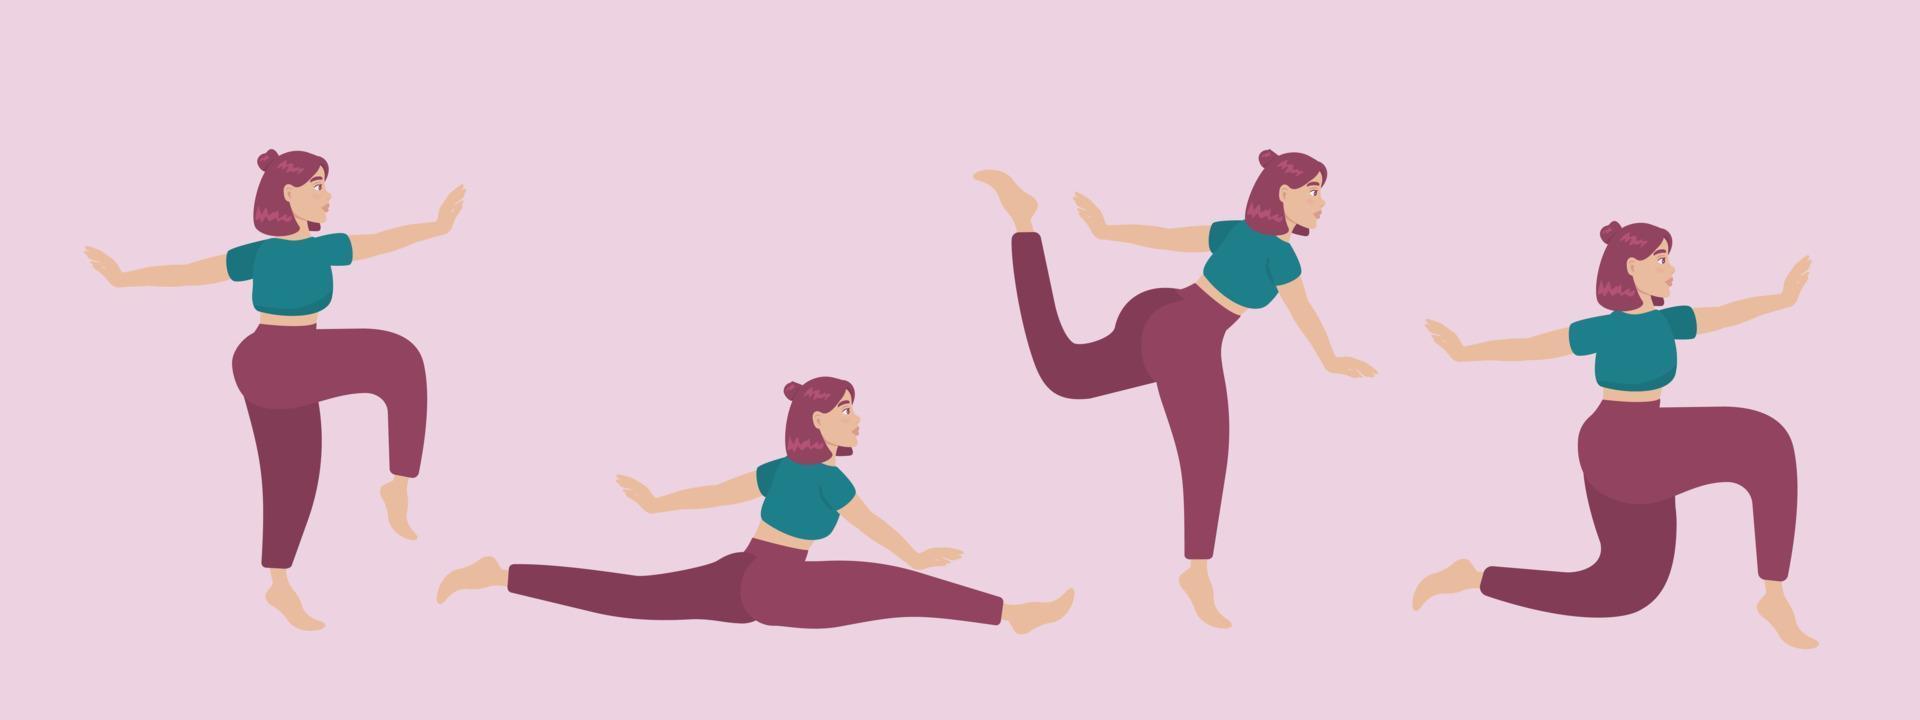 Satz von Vektor-Silhouetten der Frau, die Yoga-Übungen macht. Farbige Symbole eines Mädchens in vielen verschiedenen Yoga-Posen einzeln auf rosa Hintergrund. Yoga-Komplex. Fitnesstraining. vektor